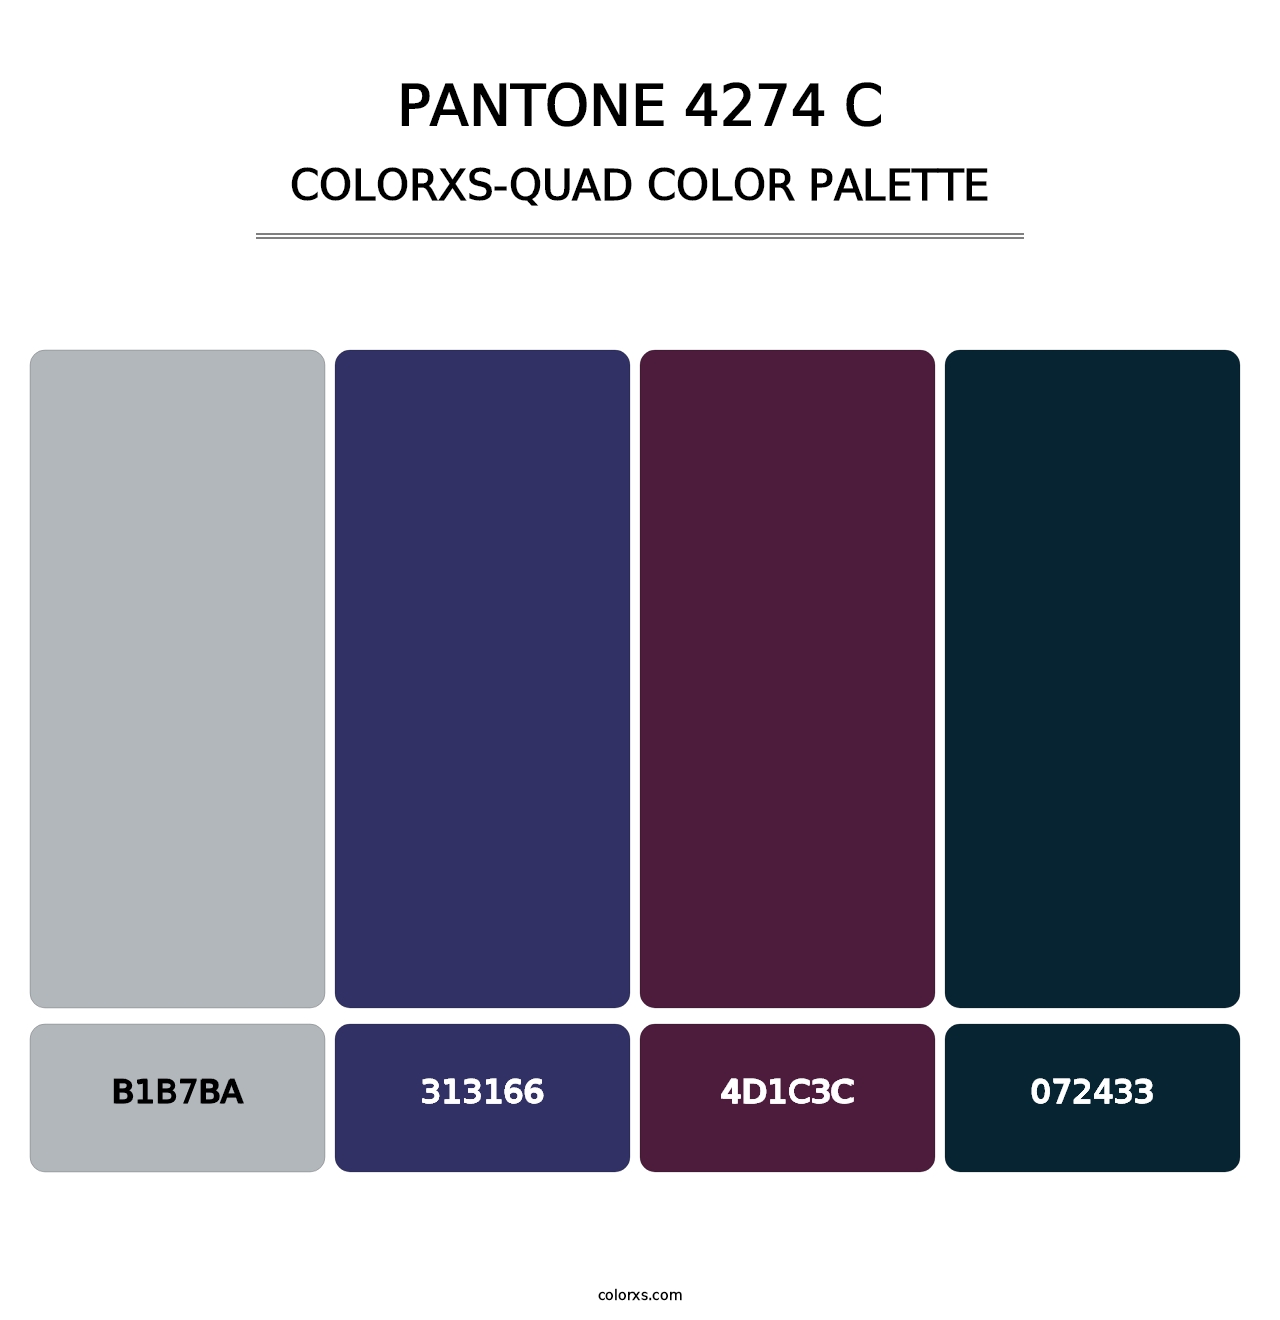 PANTONE 4274 C - Colorxs Quad Palette